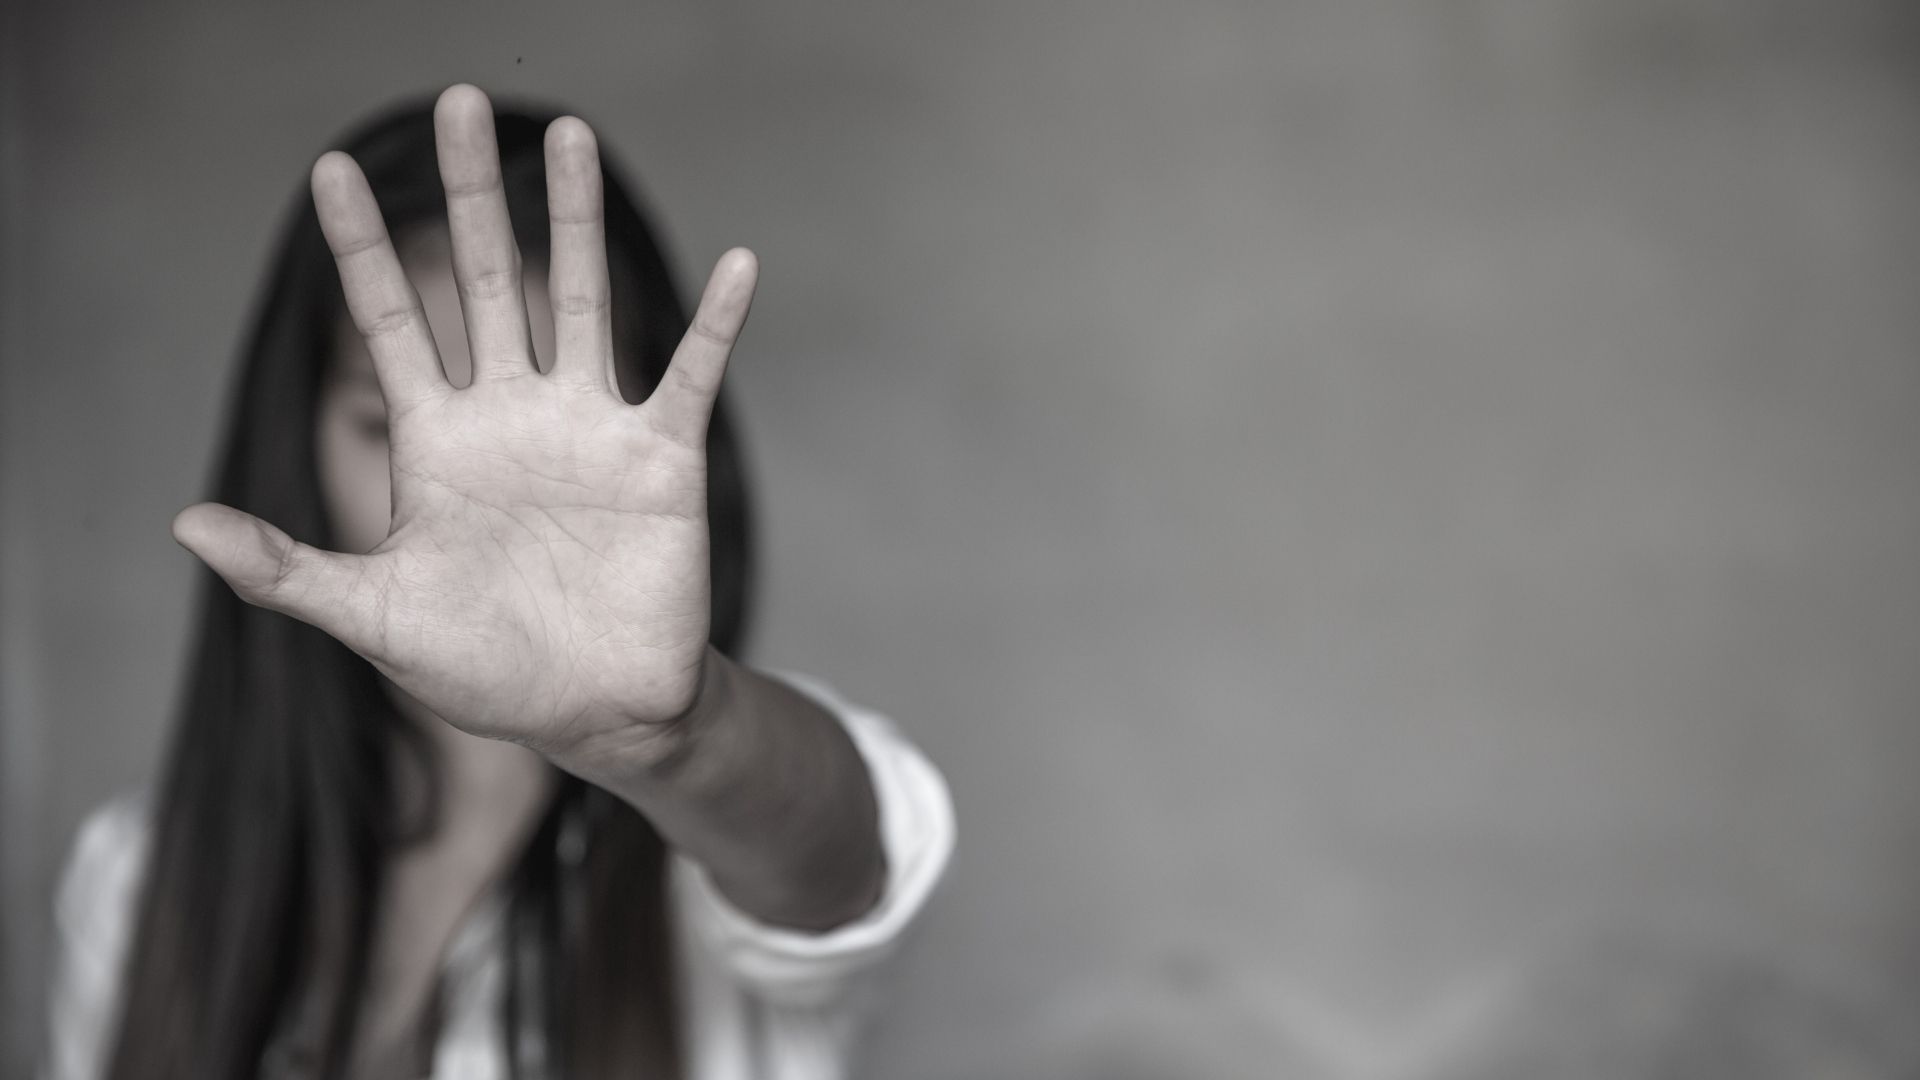 Pessoas que sofrem relações abusivas precisam ser alertadas da violência a qual estão submetidas | Foto: Tinnakorn Jorruang/Shutterstock